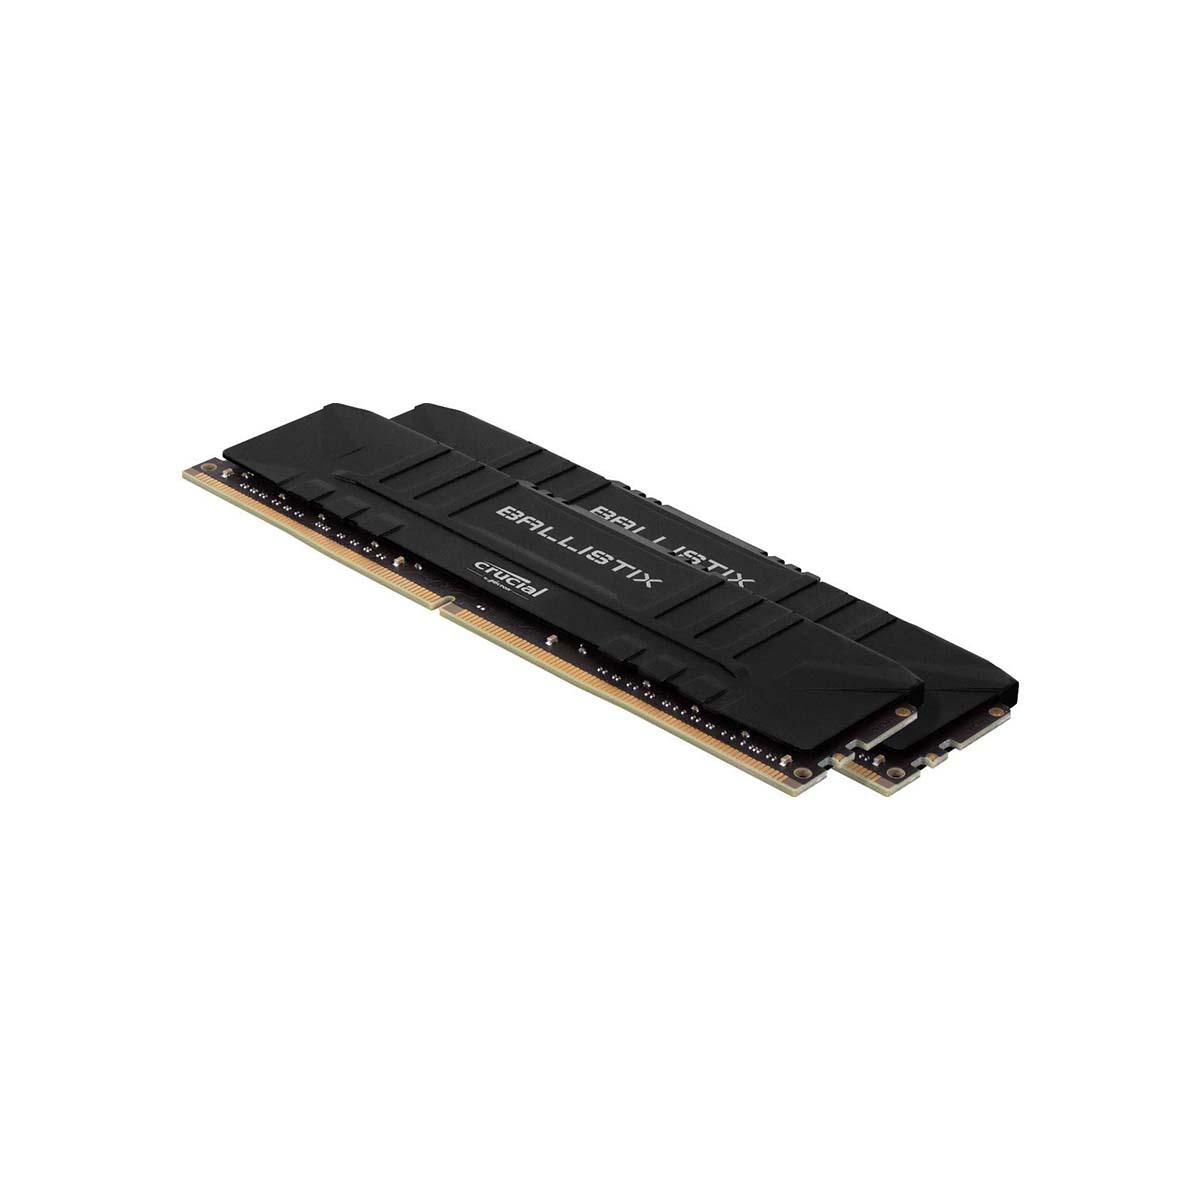 MEMORIA DIMM DDR4 CRUCIAL BALLISTIX (BL2K8G26C16U4B) 16GB KIT (2X8GB) 2666MHZ, BLACK HEATSINK, CL15 - CRUCIAL